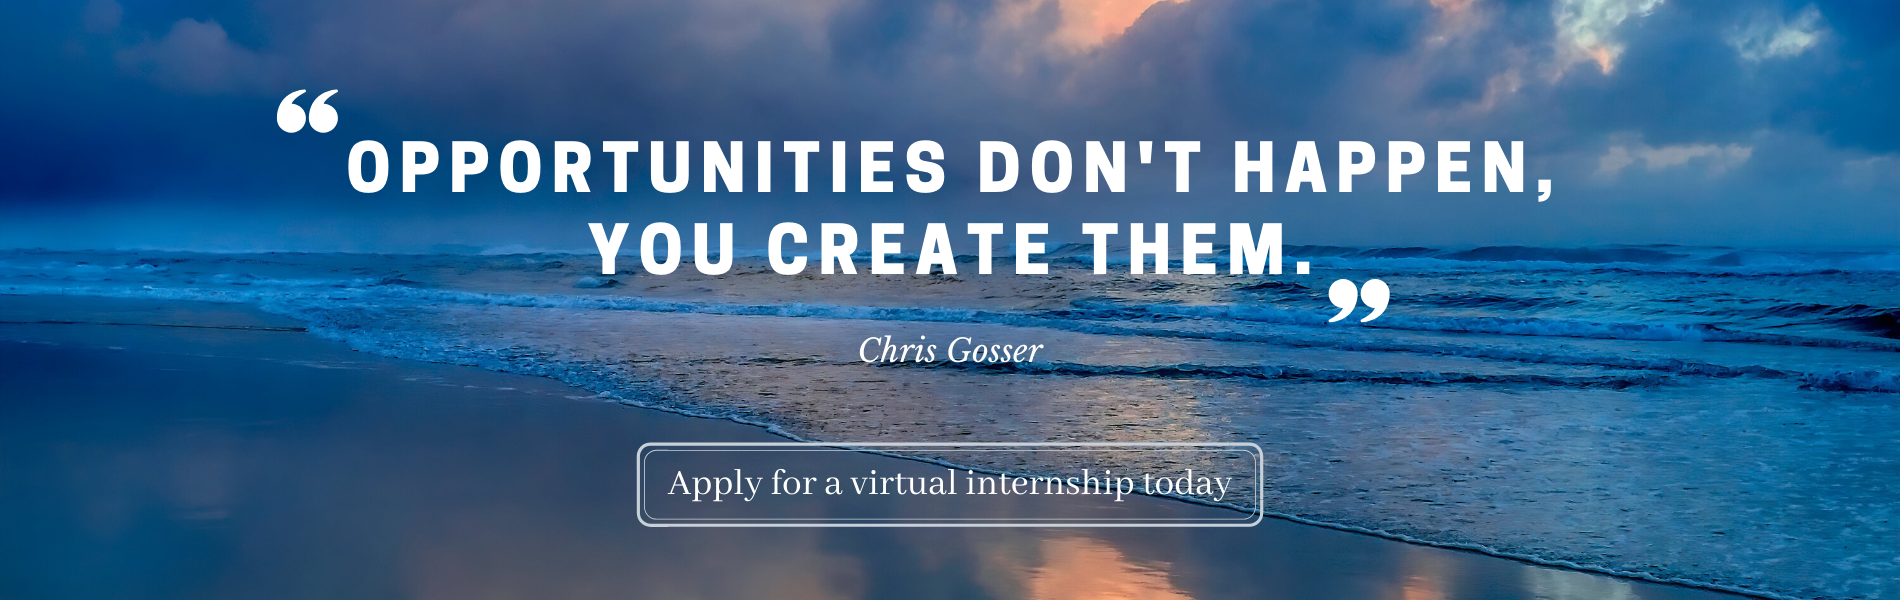 Apply for a virtual internship today